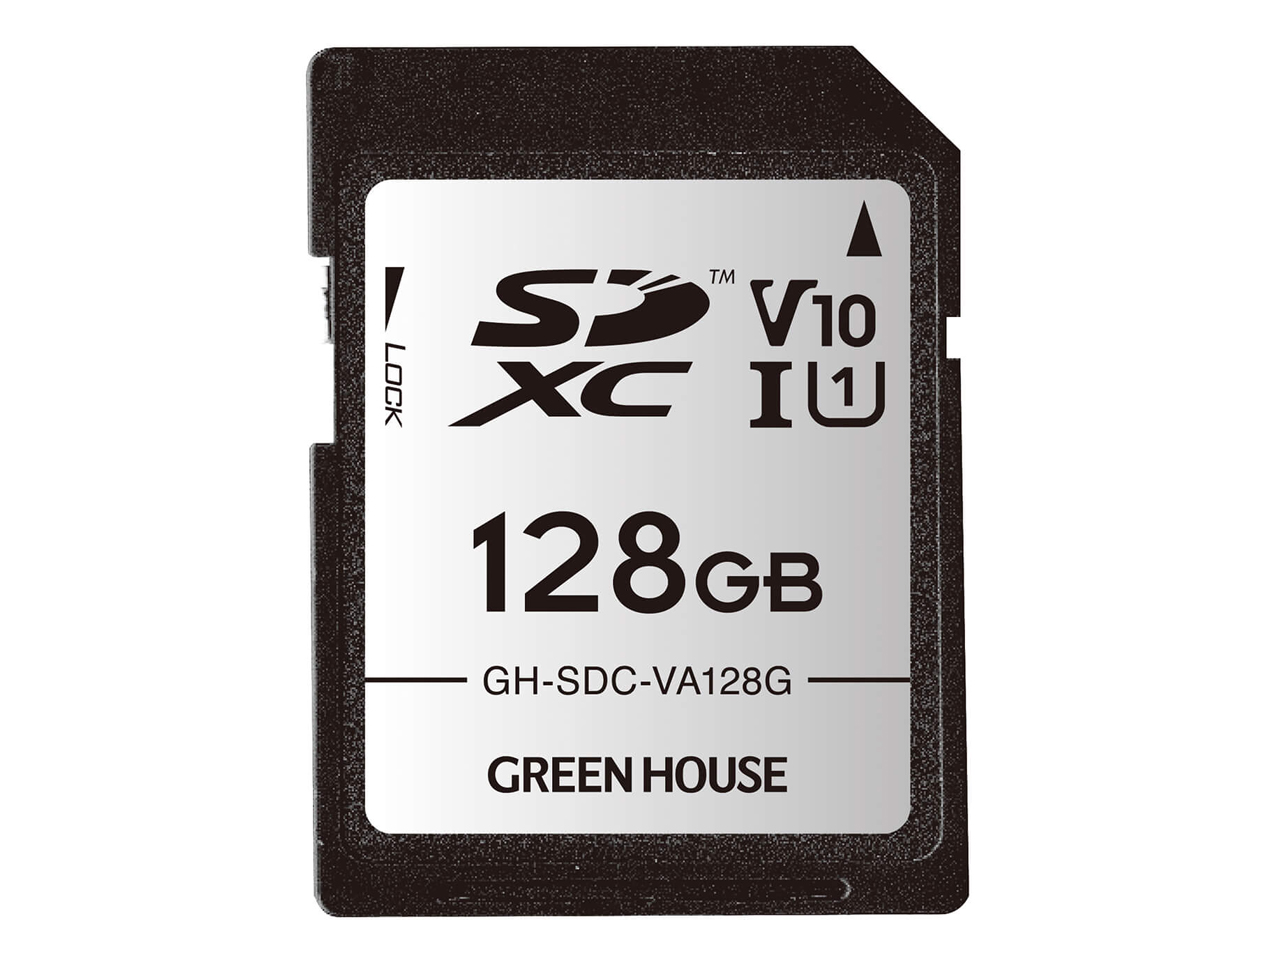 価格.com - GH-SDC-VA128G [128GB] の製品画像